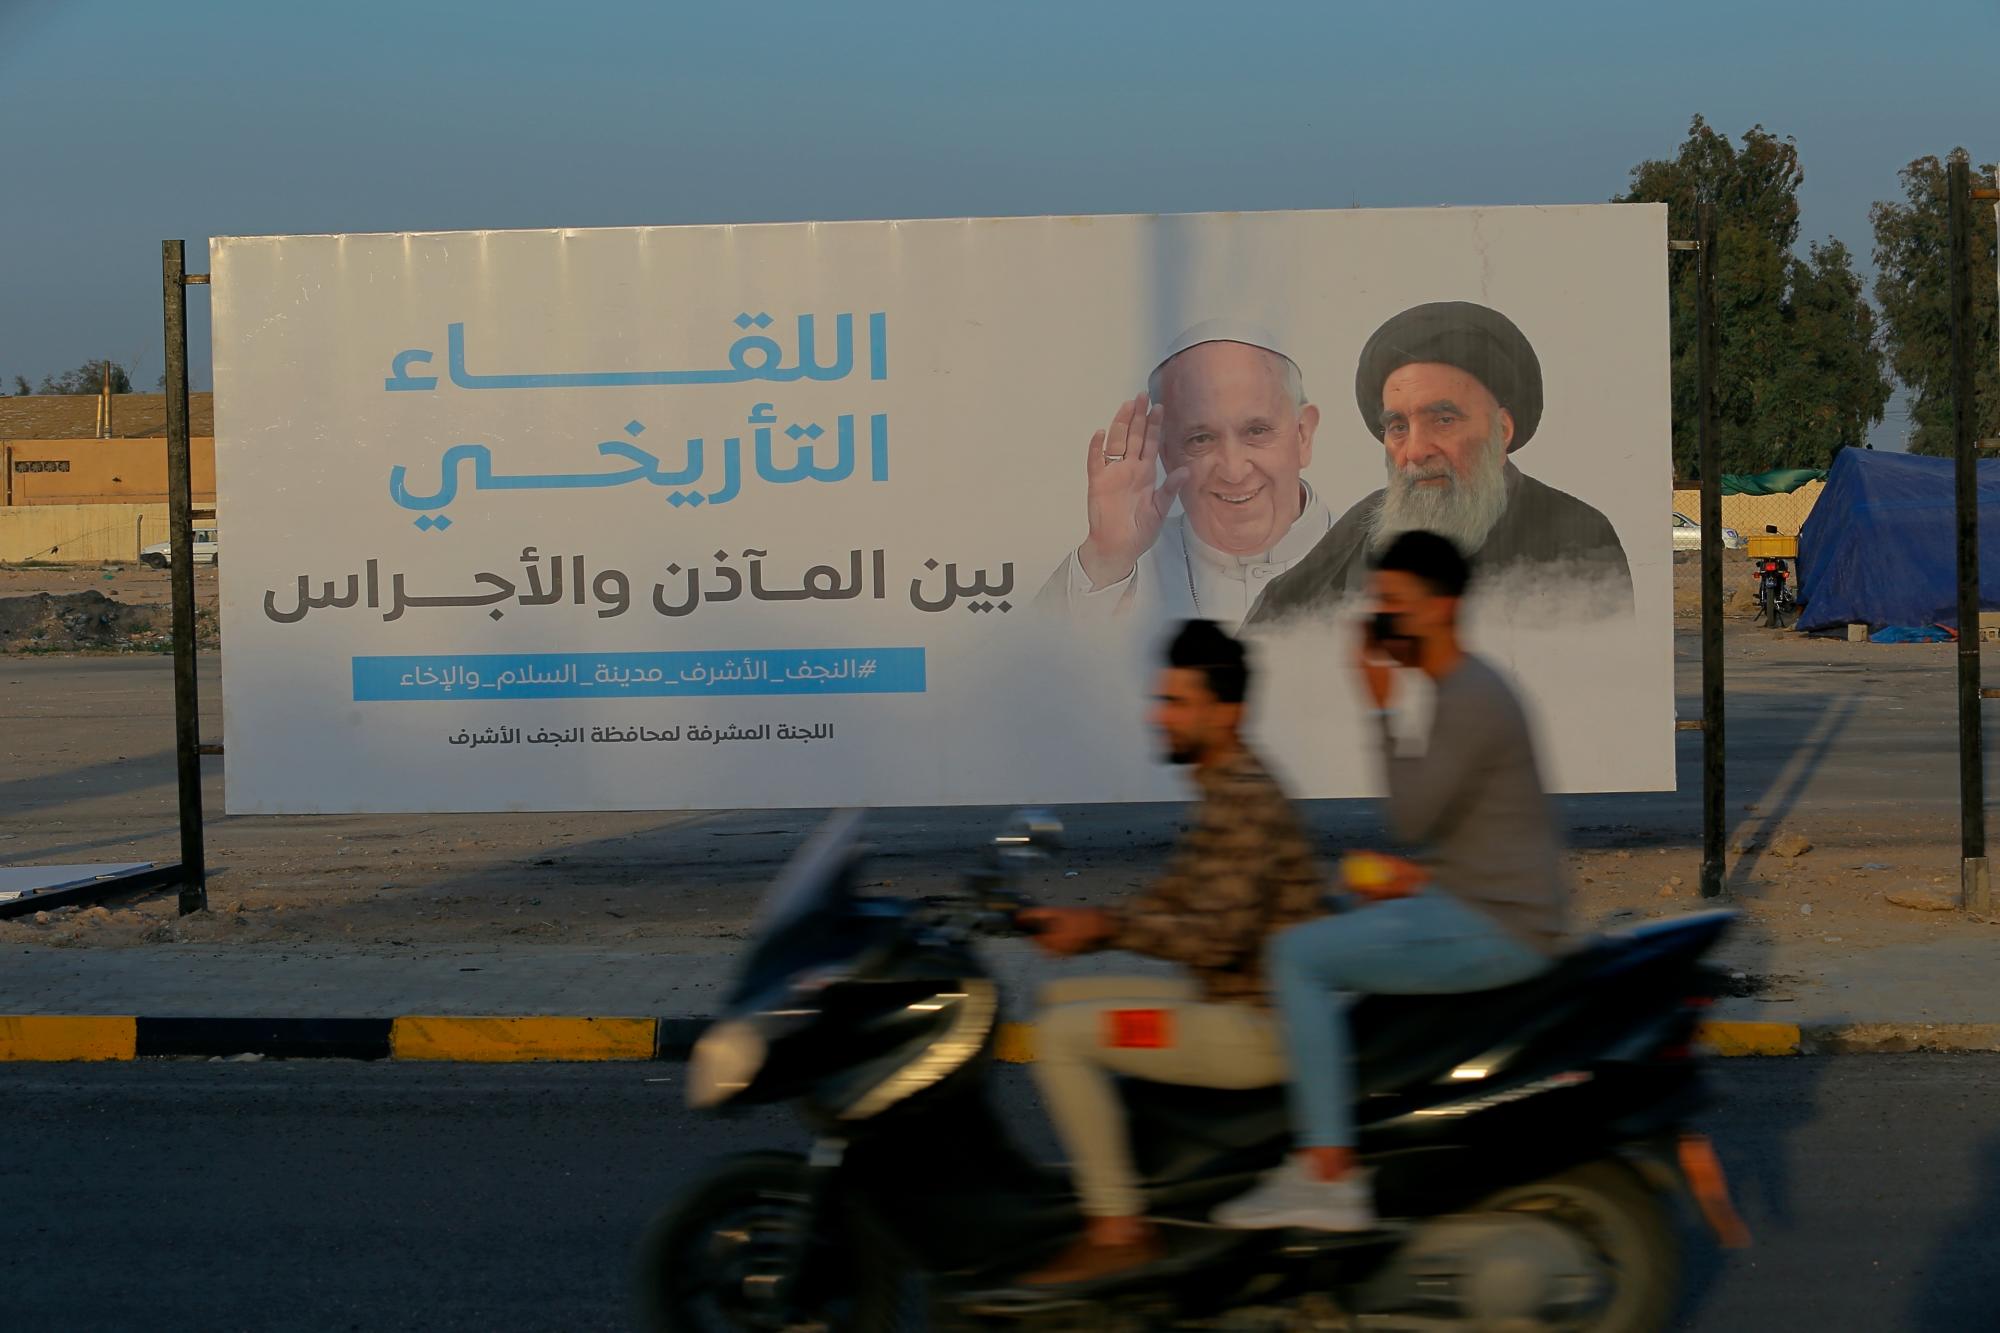 Los iraquíes colocaron un cartel anunciando la próxima visita del Papa Francisco y una reunión con un venerado líder musulmán chiíta, el Gran Ayatolá Ali al-Sistani, a la derecha, en Najaf, Irak, el jueves 4 de marzo de 2021. (AP Photo/Anmar Khalil)